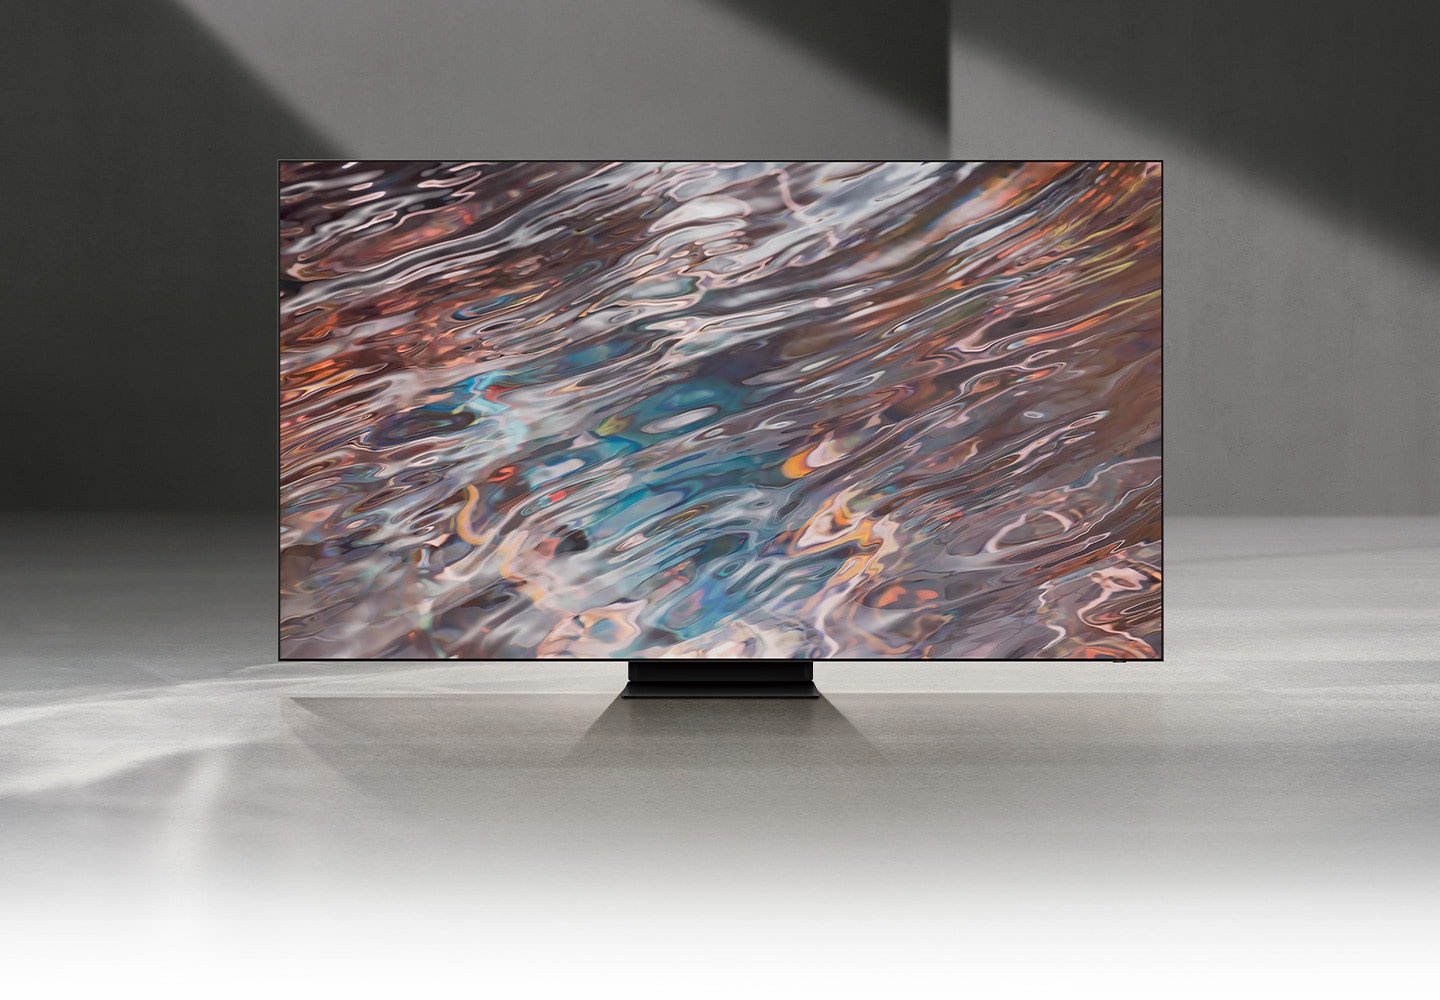 Samsung 85" QN800A Neo QLED 8K Smart TV (2021) - La próxima generación